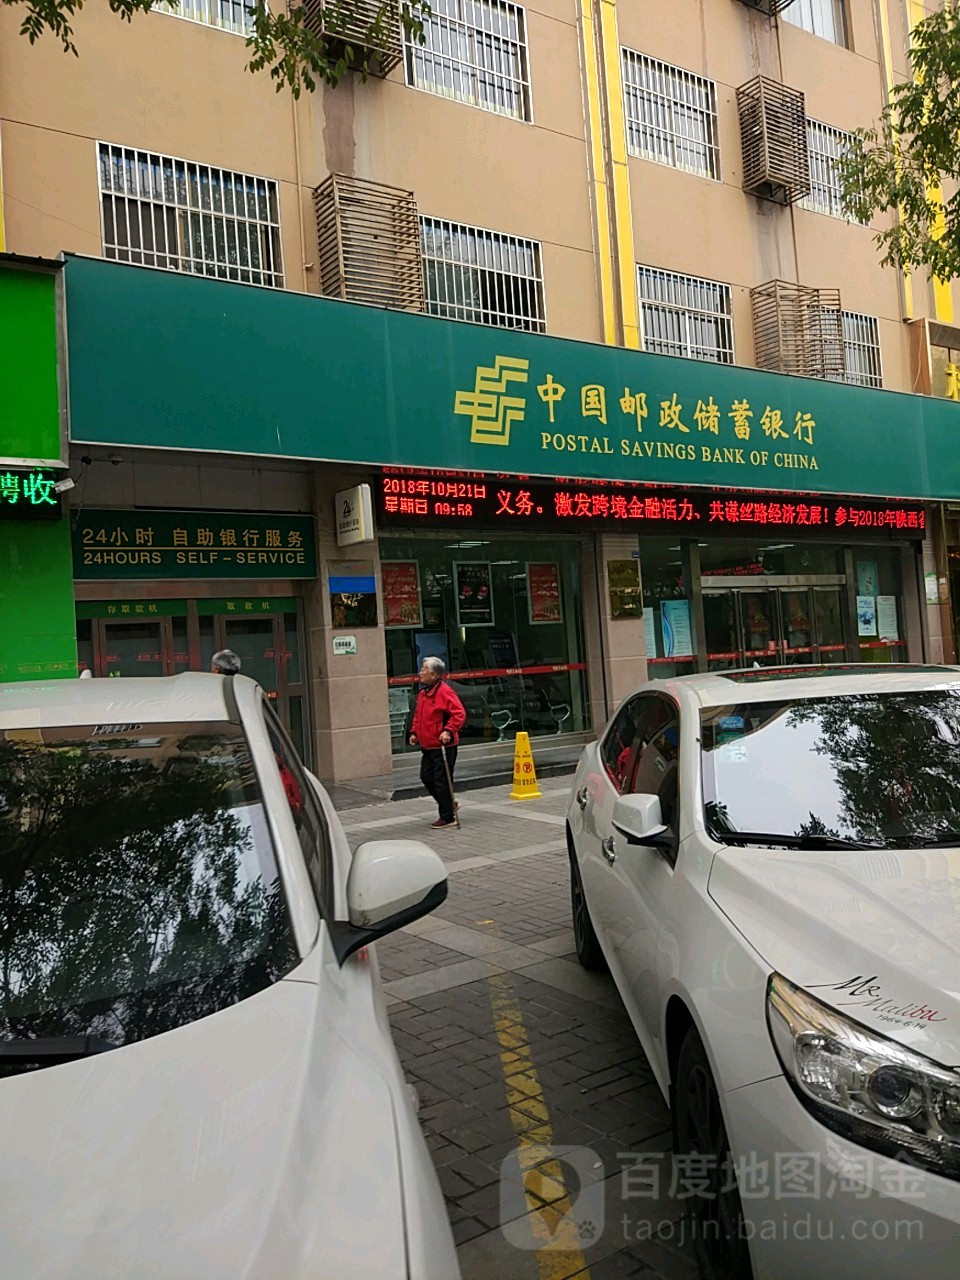 中国邮政储蓄银行ATM 24小时自助银行